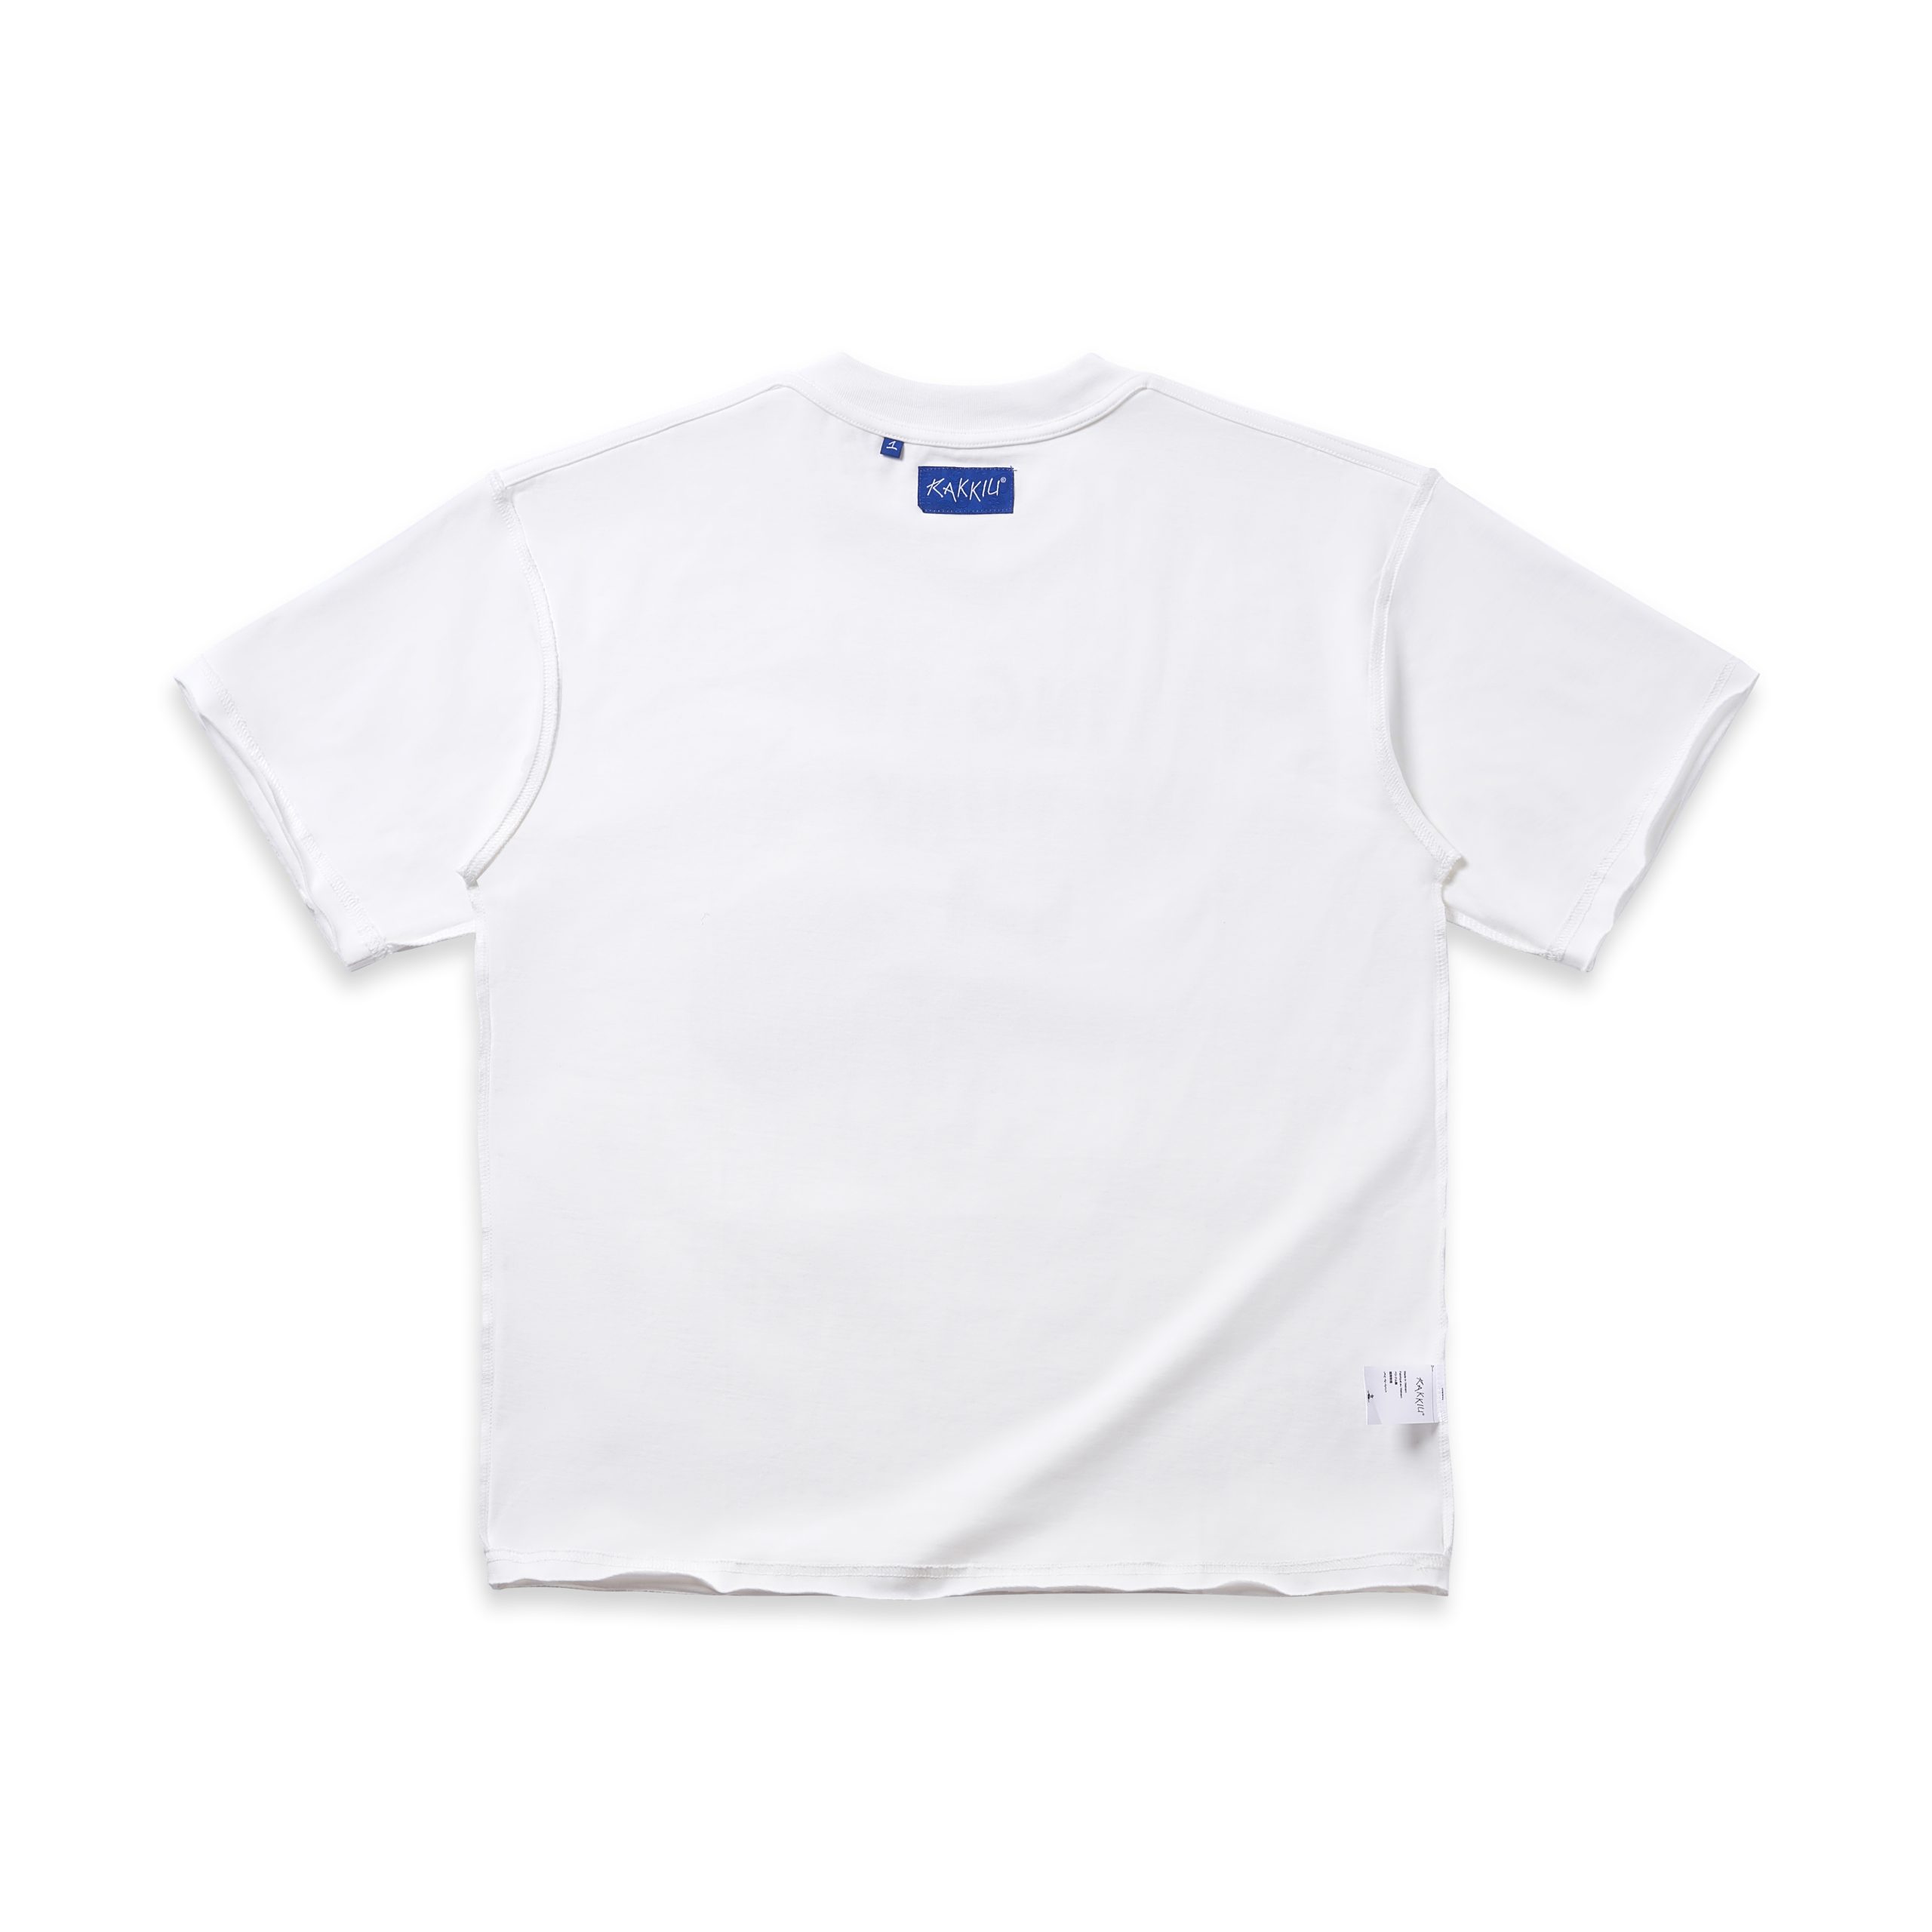 CHINCHIN White T-Shirt - RAKKIU